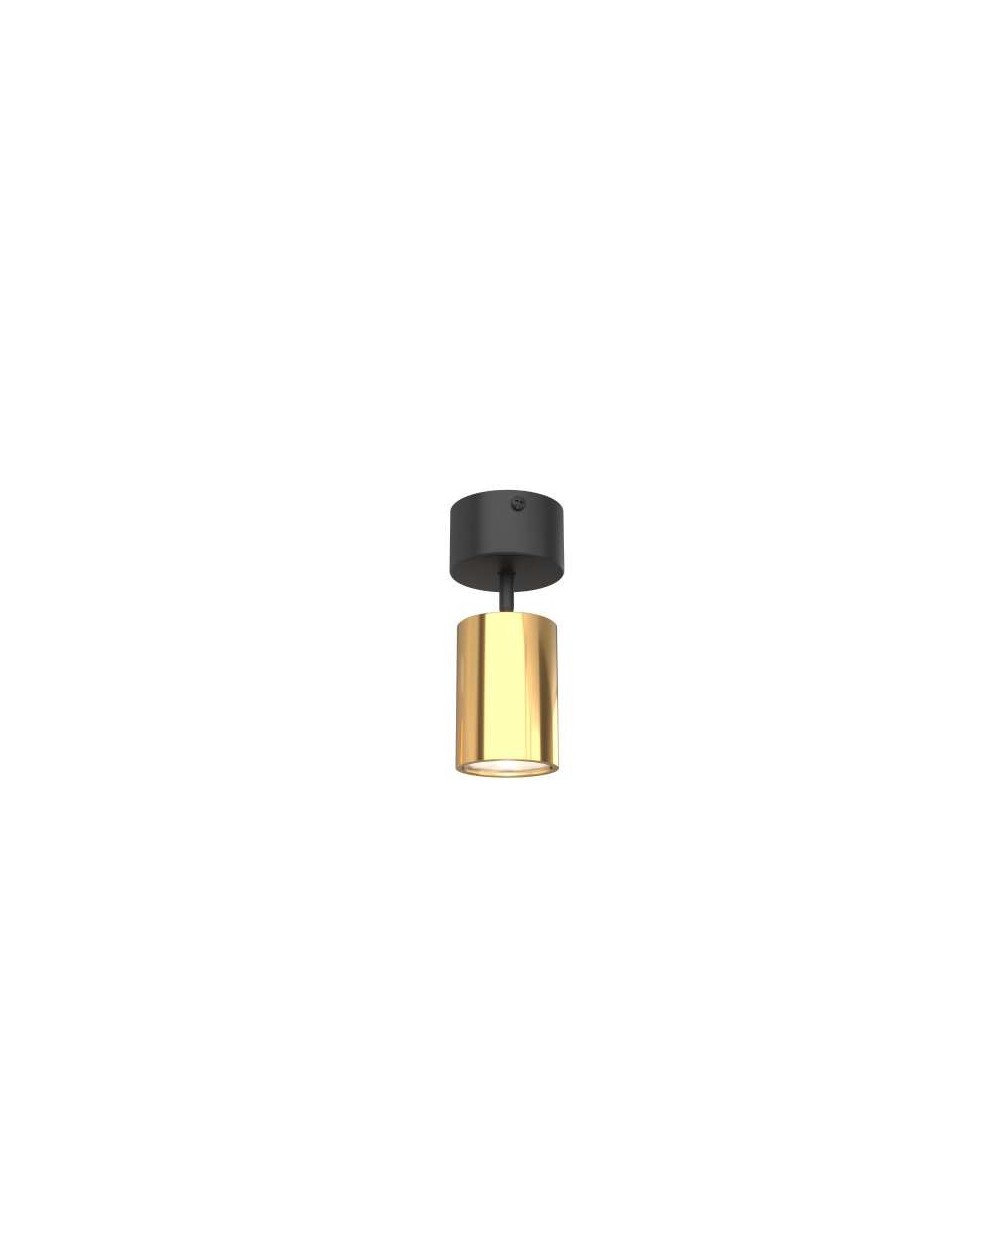 Reflektor Kika Mobile Gold / tuba spot / kinkiet - Orlicki Design w kolorze czarno-złotym lampa natynkowa sufitowa lub ścienna